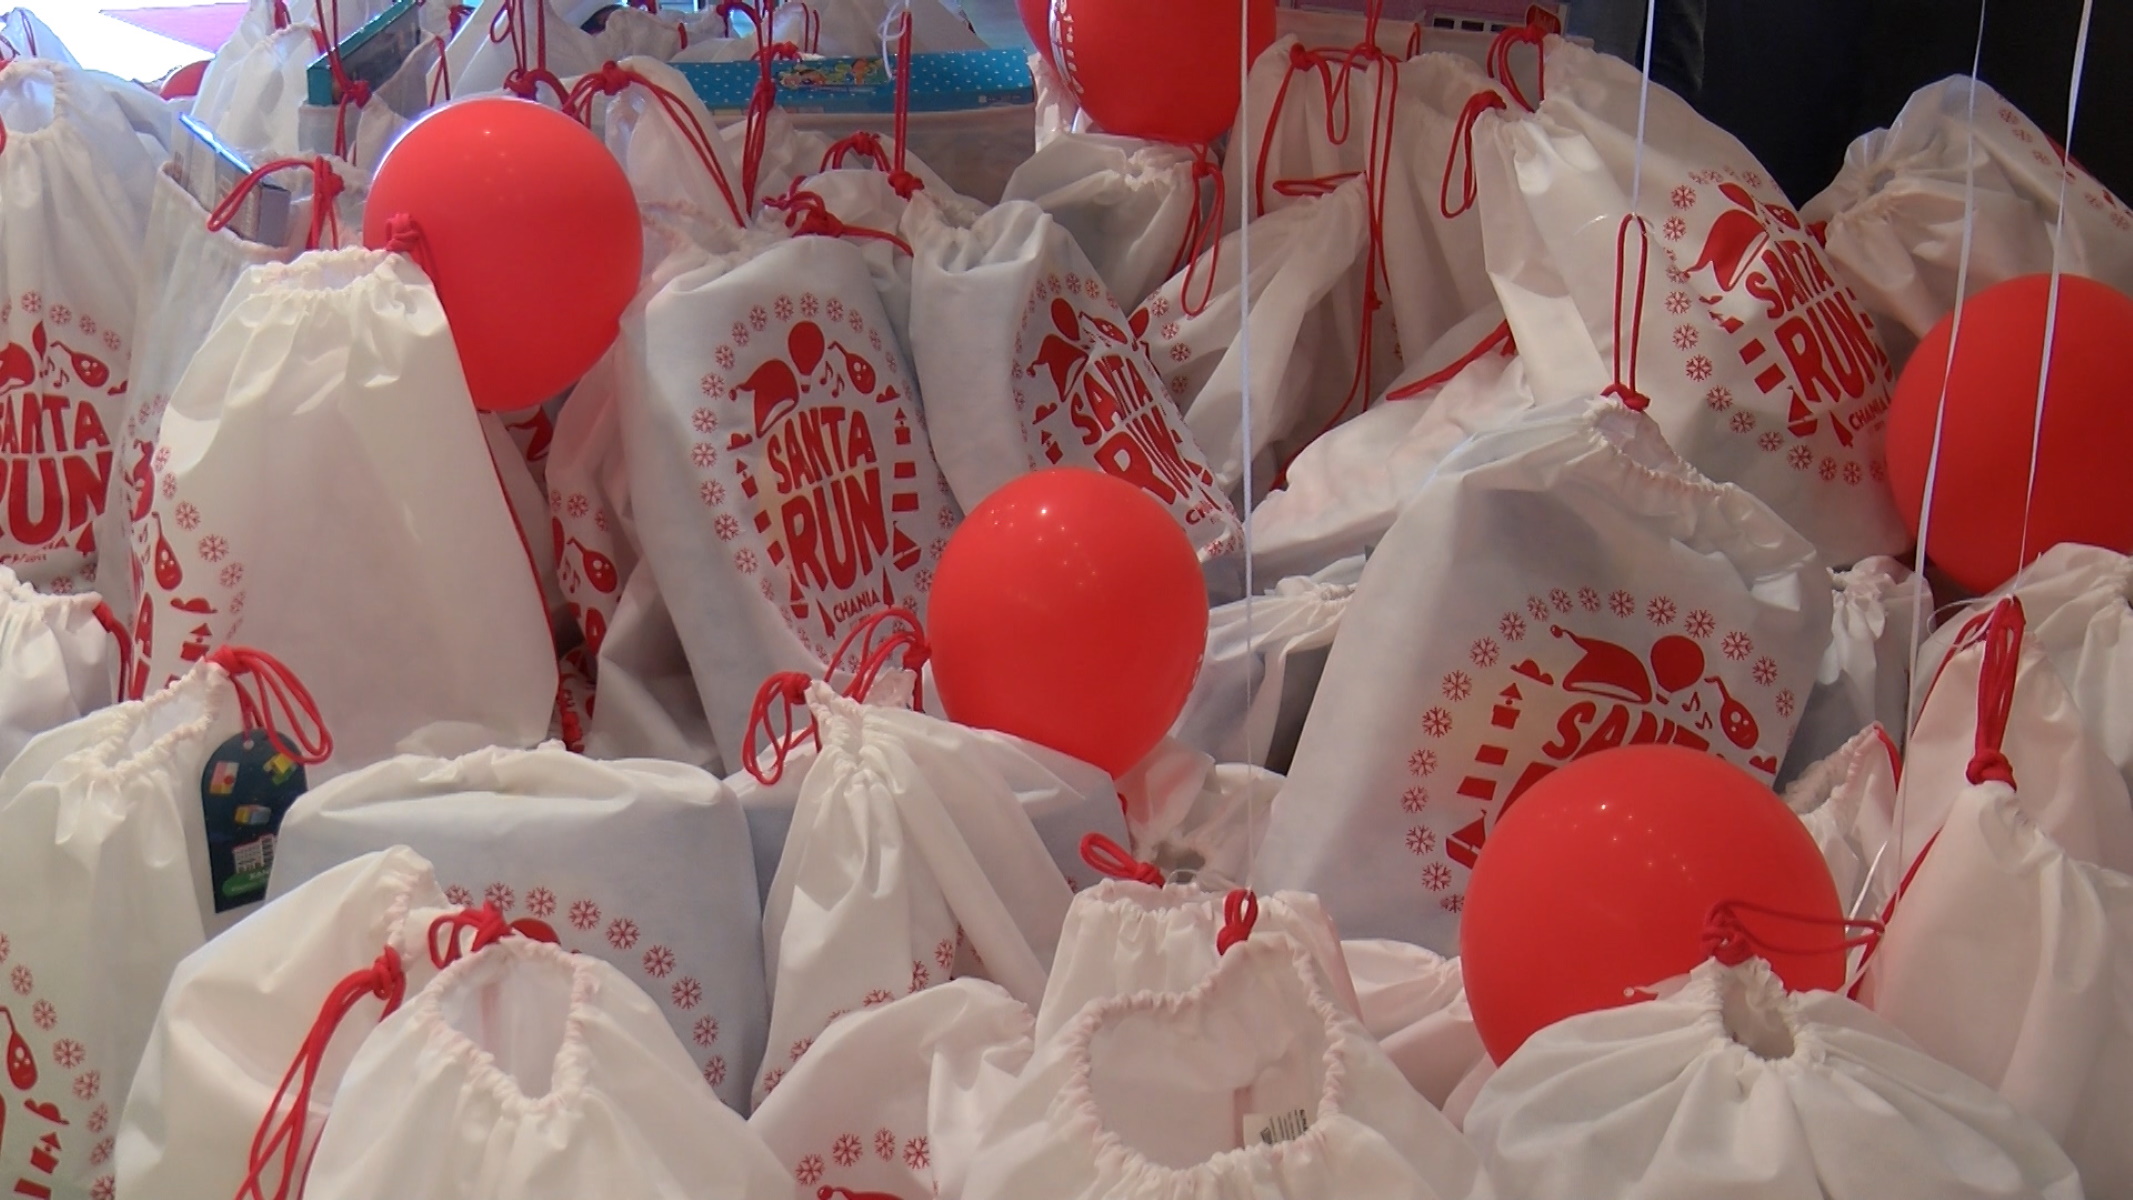 Χανιά: Το Santa Run γέμισε τους σάκους του με δώρα για τα ιδρύματα της πόλης